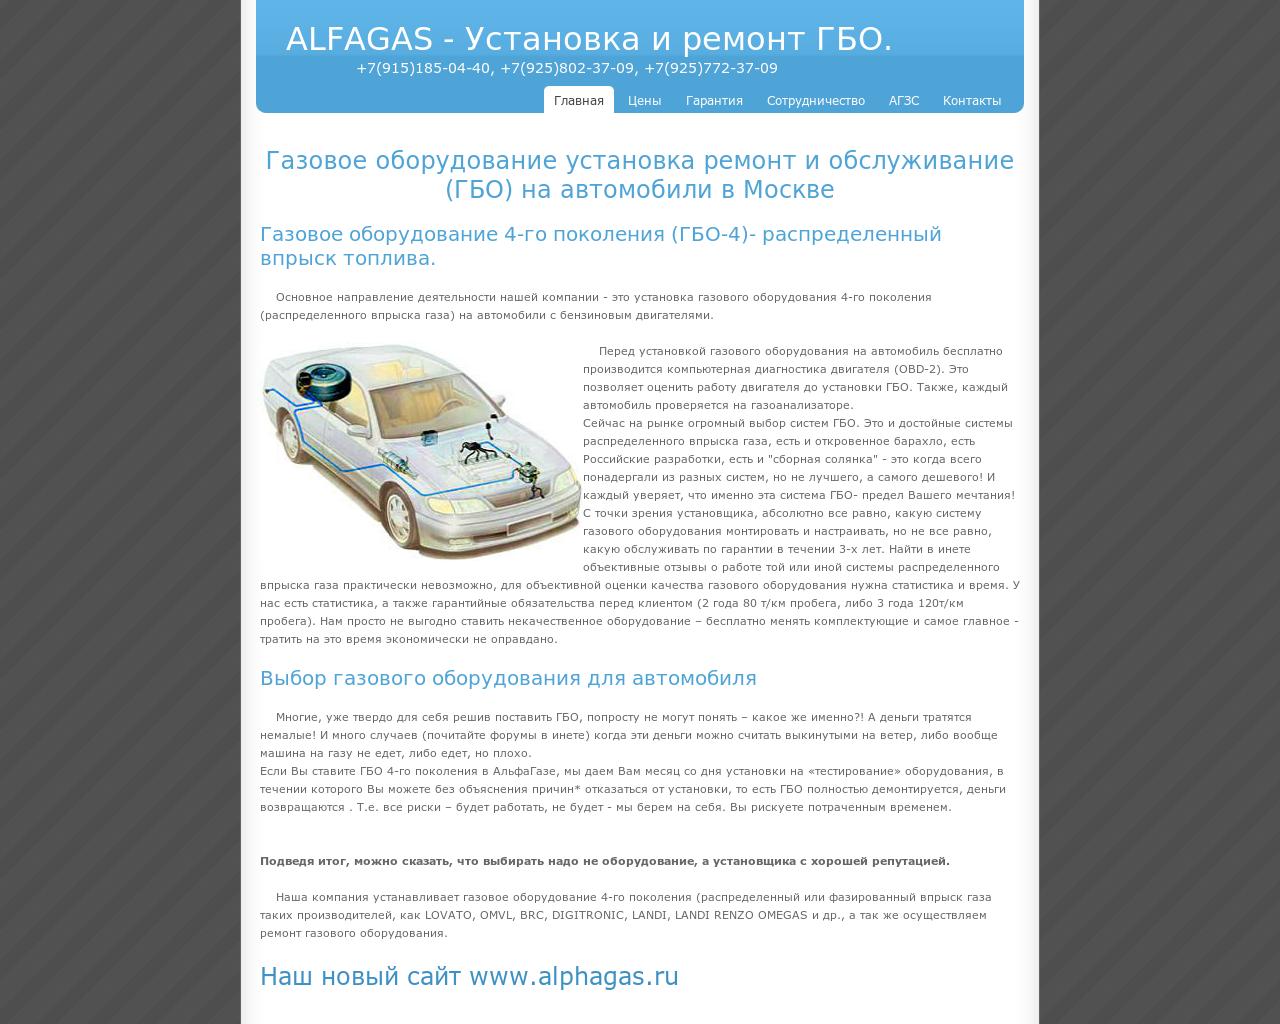 Изображение сайта alfagas.ru в разрешении 1280x1024